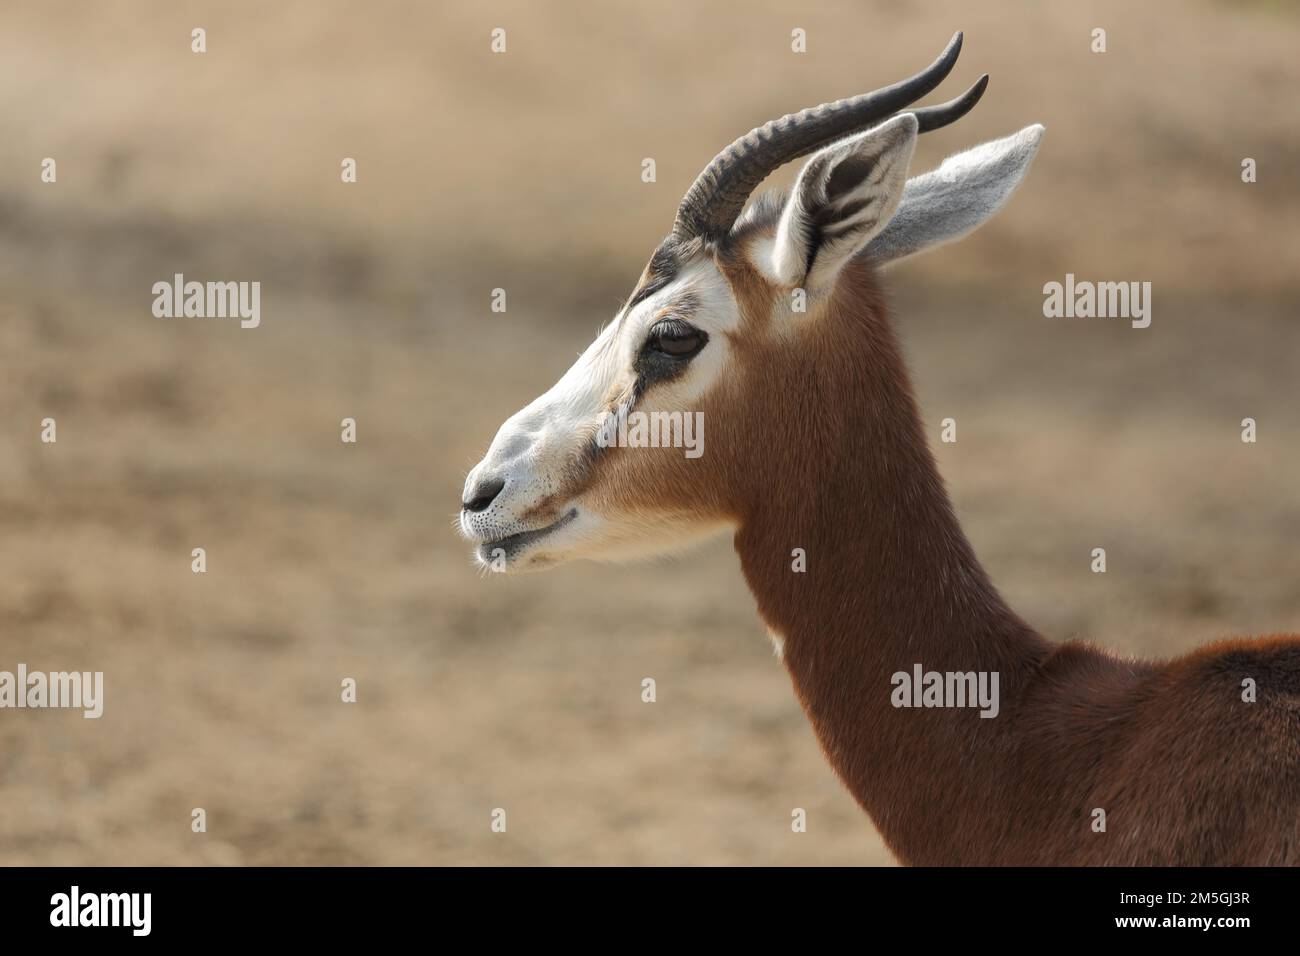 Portrait de la gazelle de Mhorr (Nanger dama mhorr), gazelle, porteur de corne, biongulé, ruminant, captif Banque D'Images